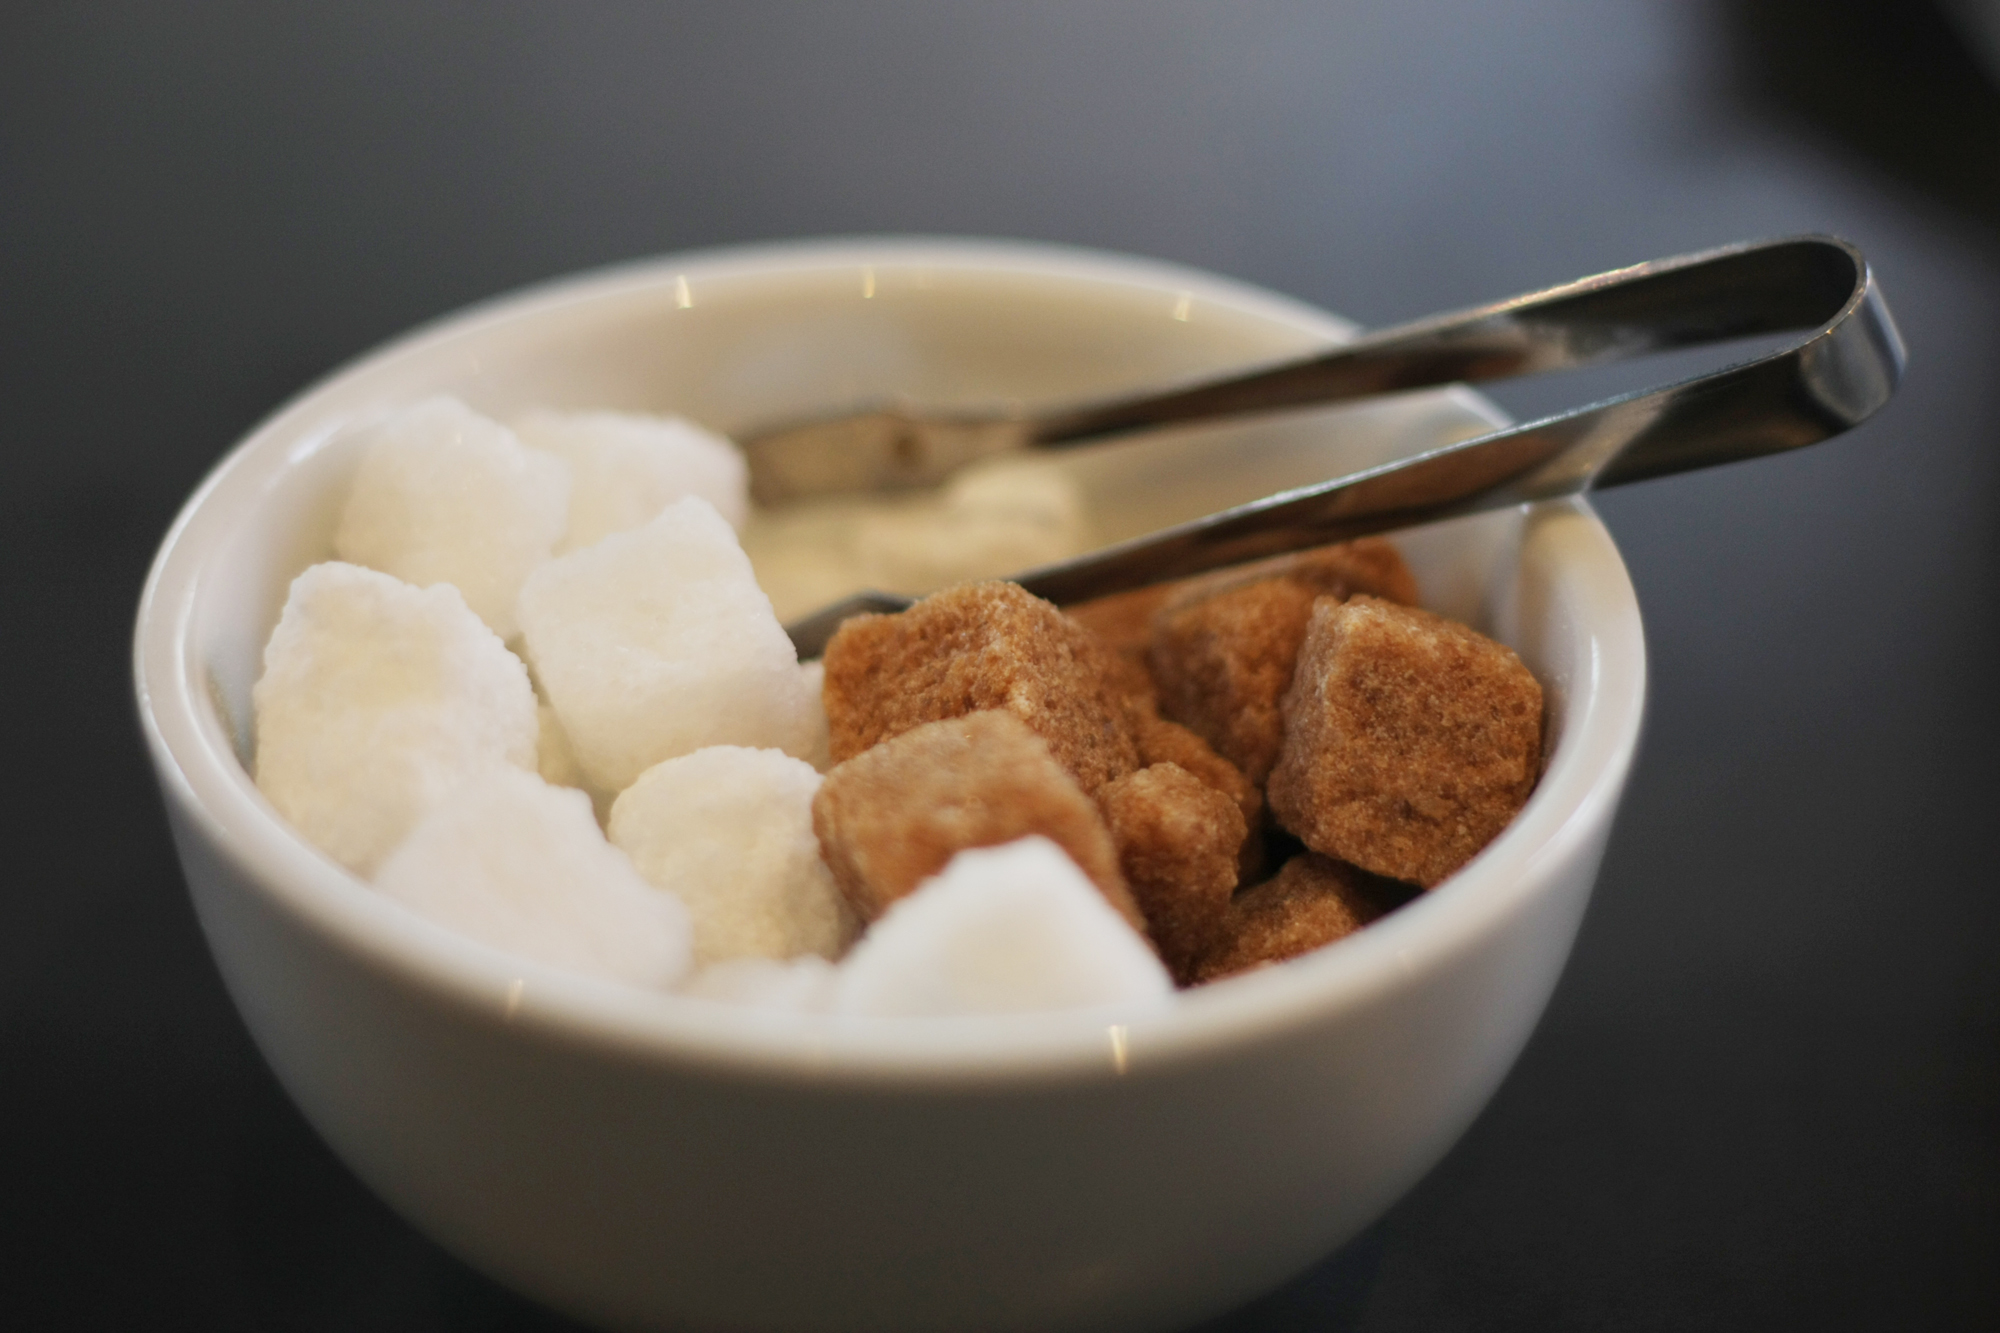 Годишно българинът консумира по 36 кг захар, докато преди близо век употребата е била 2 кг годишно